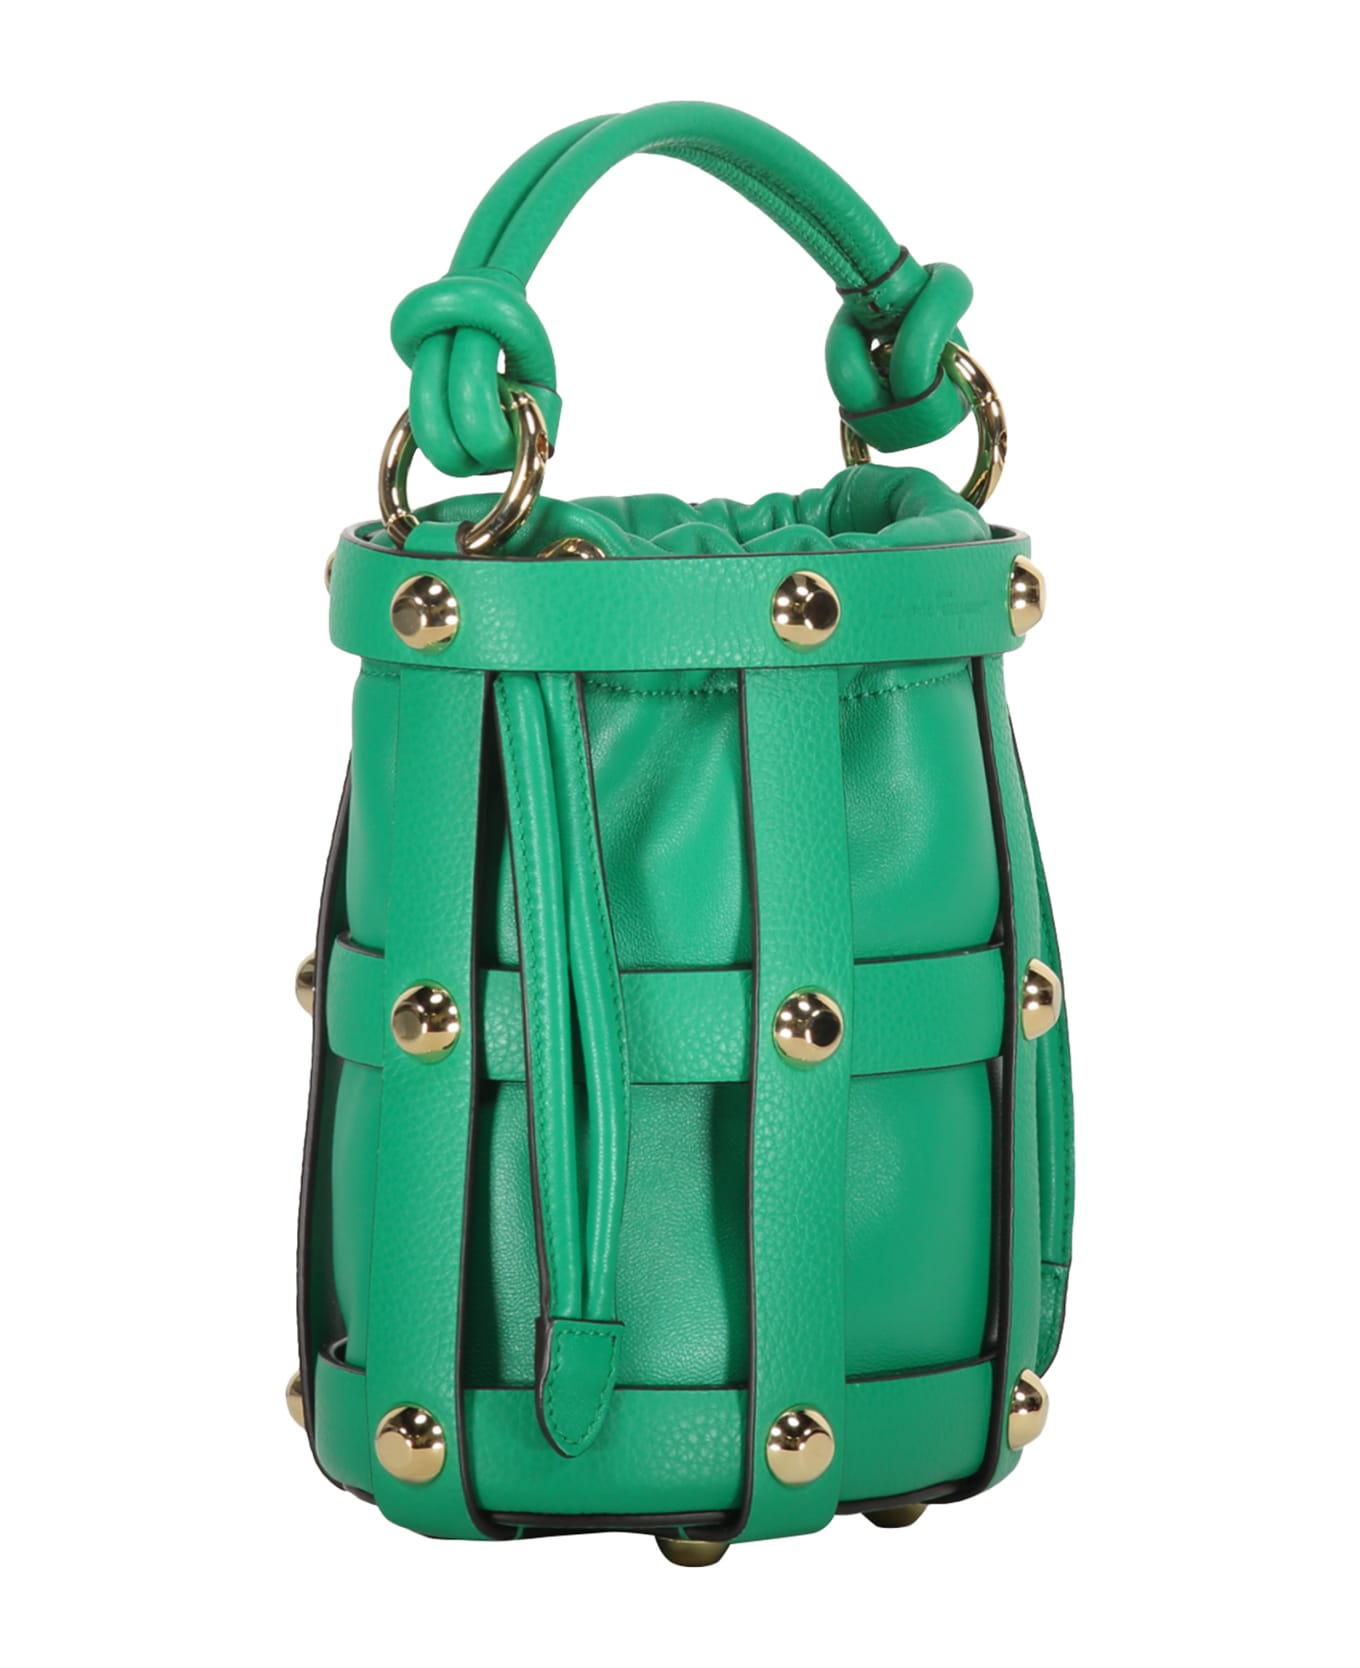 Ferragamo Leather Bucket Bag - green